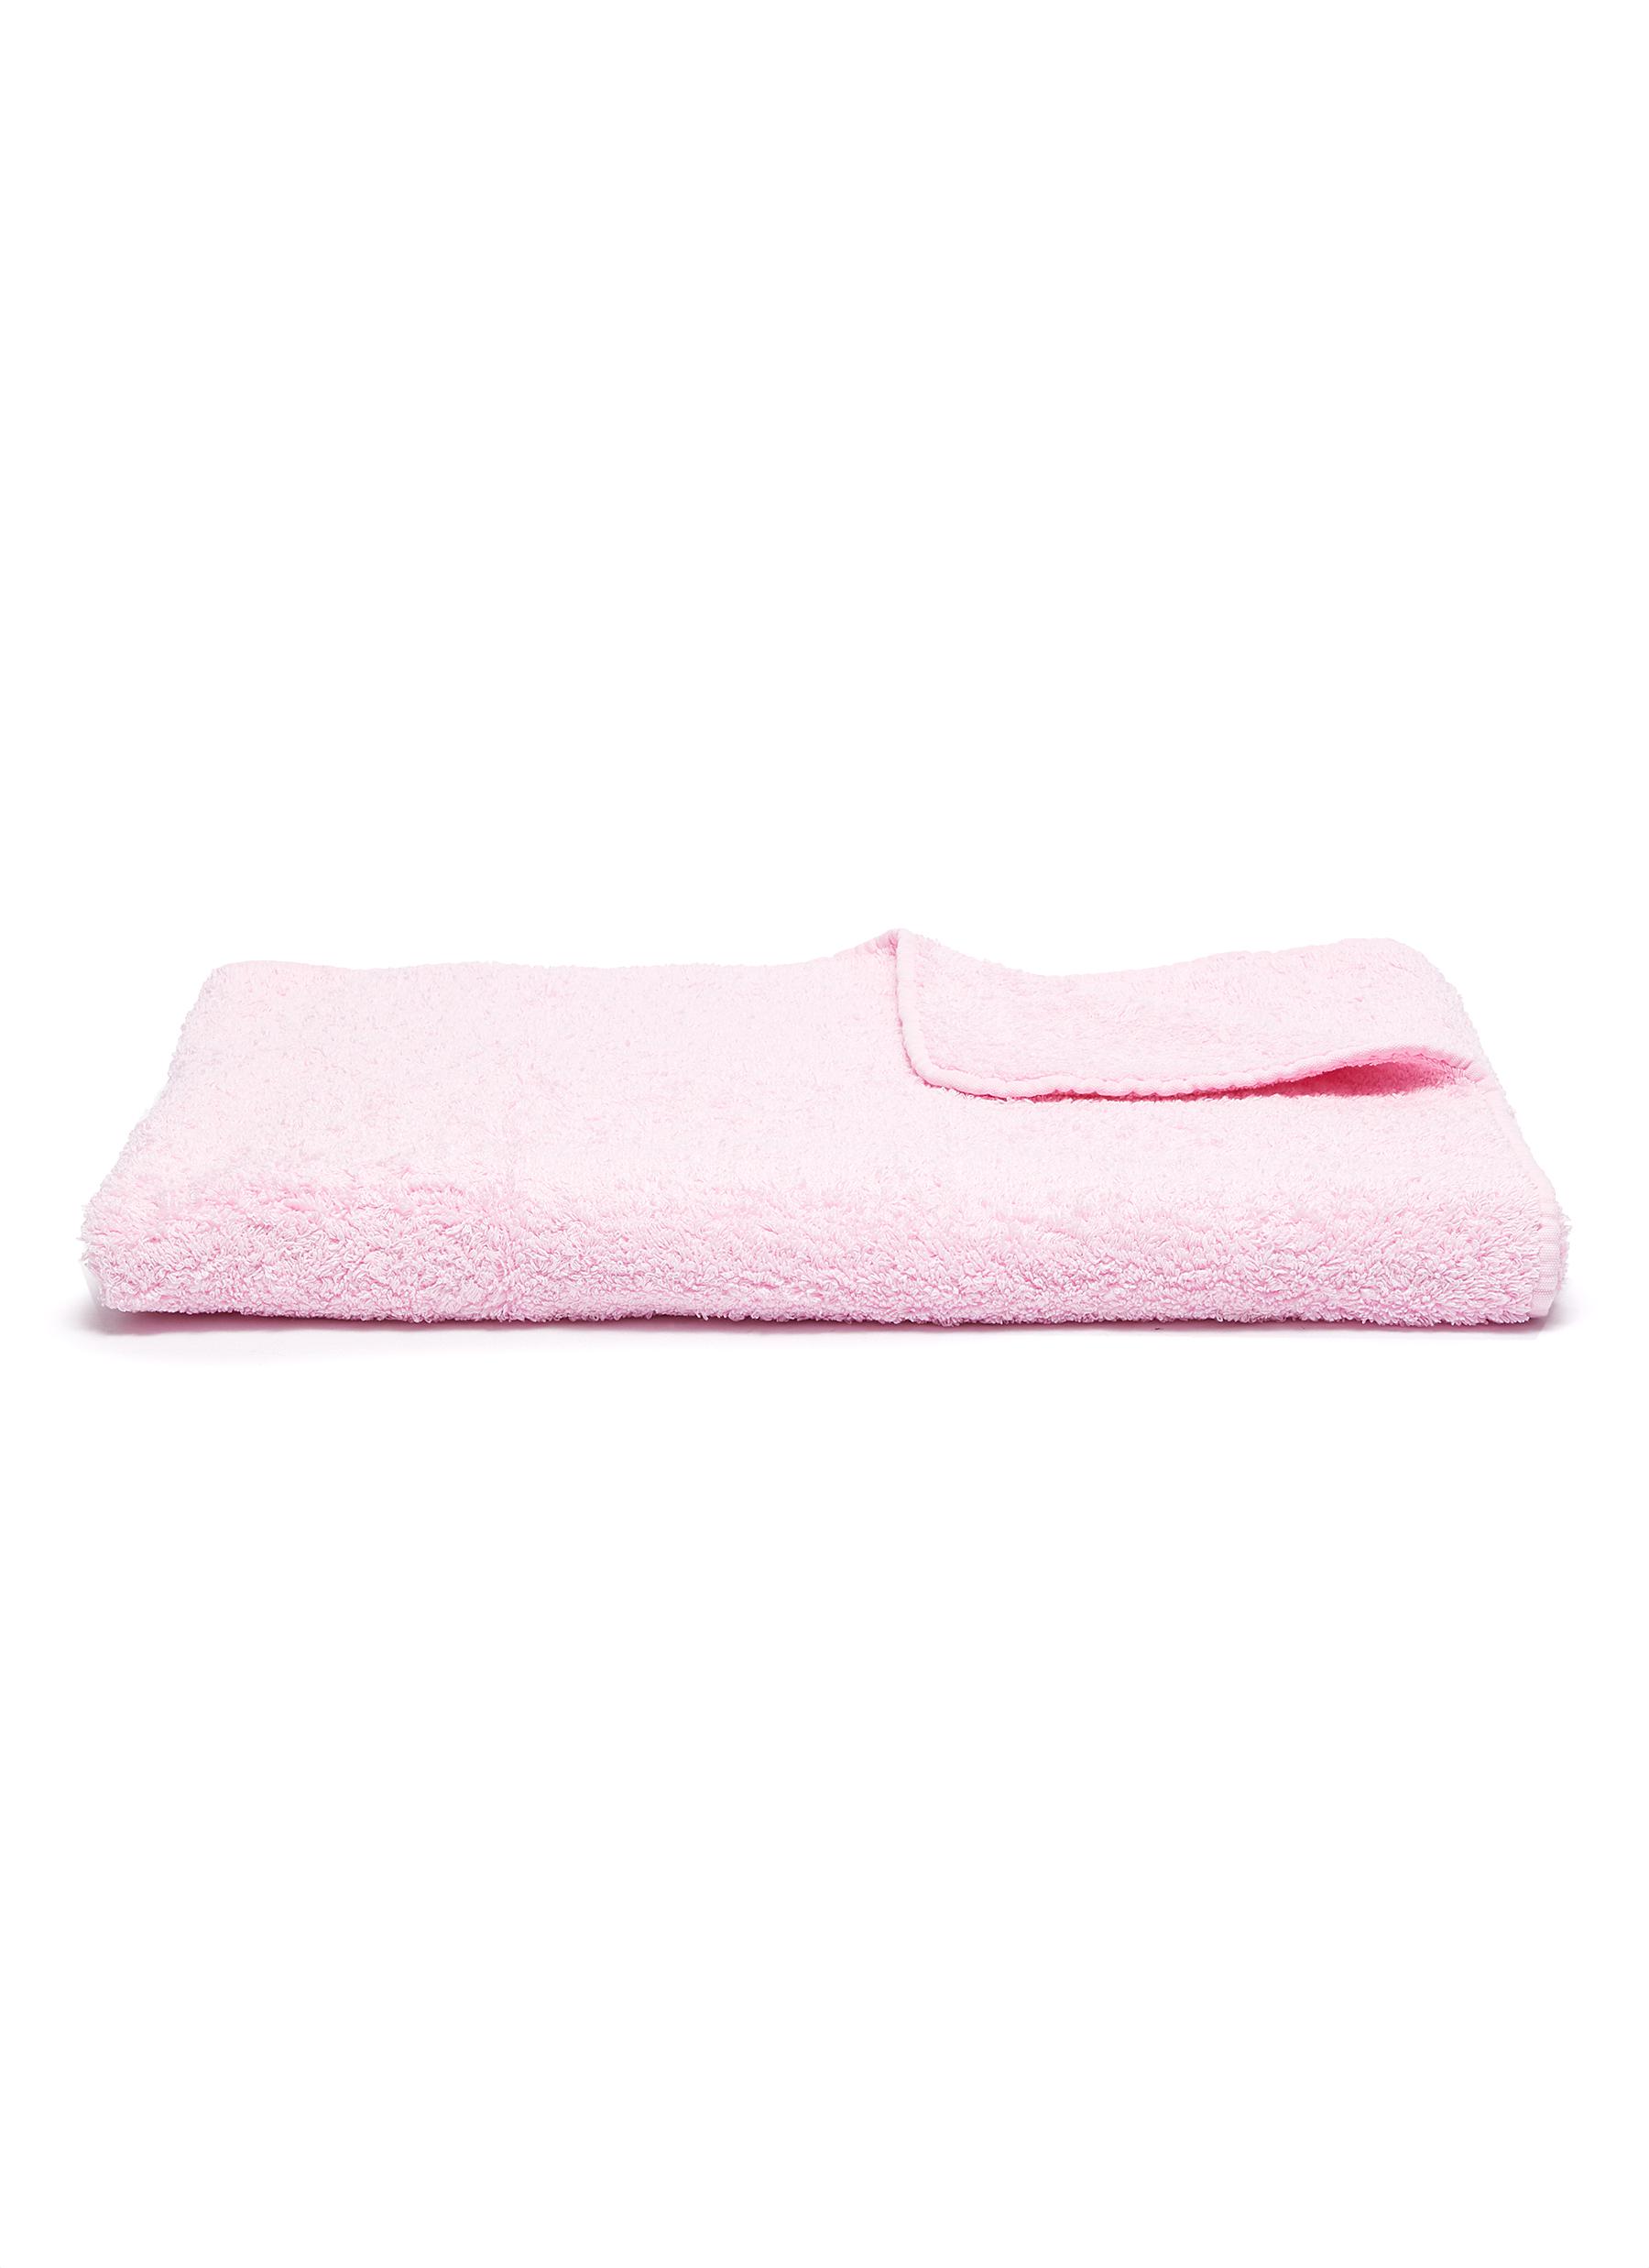 Abyss Super Pile Cotton Bath Towel - Pink Lady